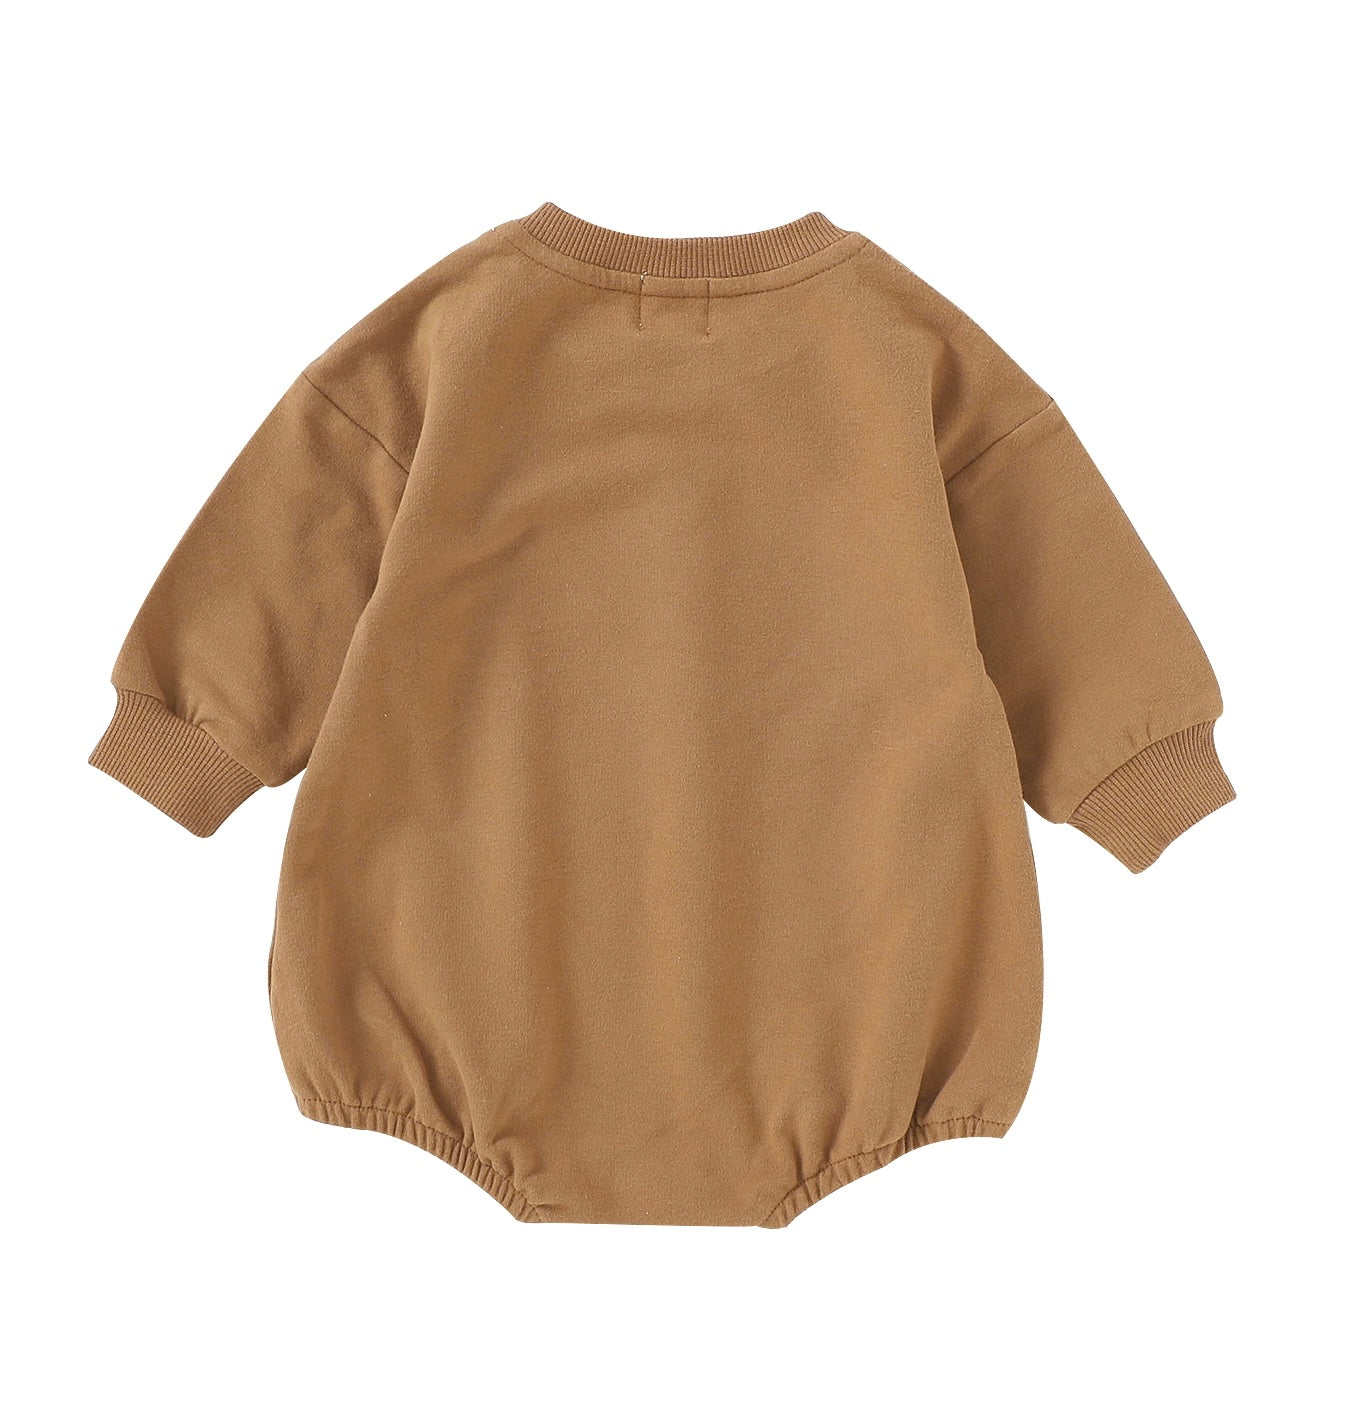 Sweater Romper - Cocoa